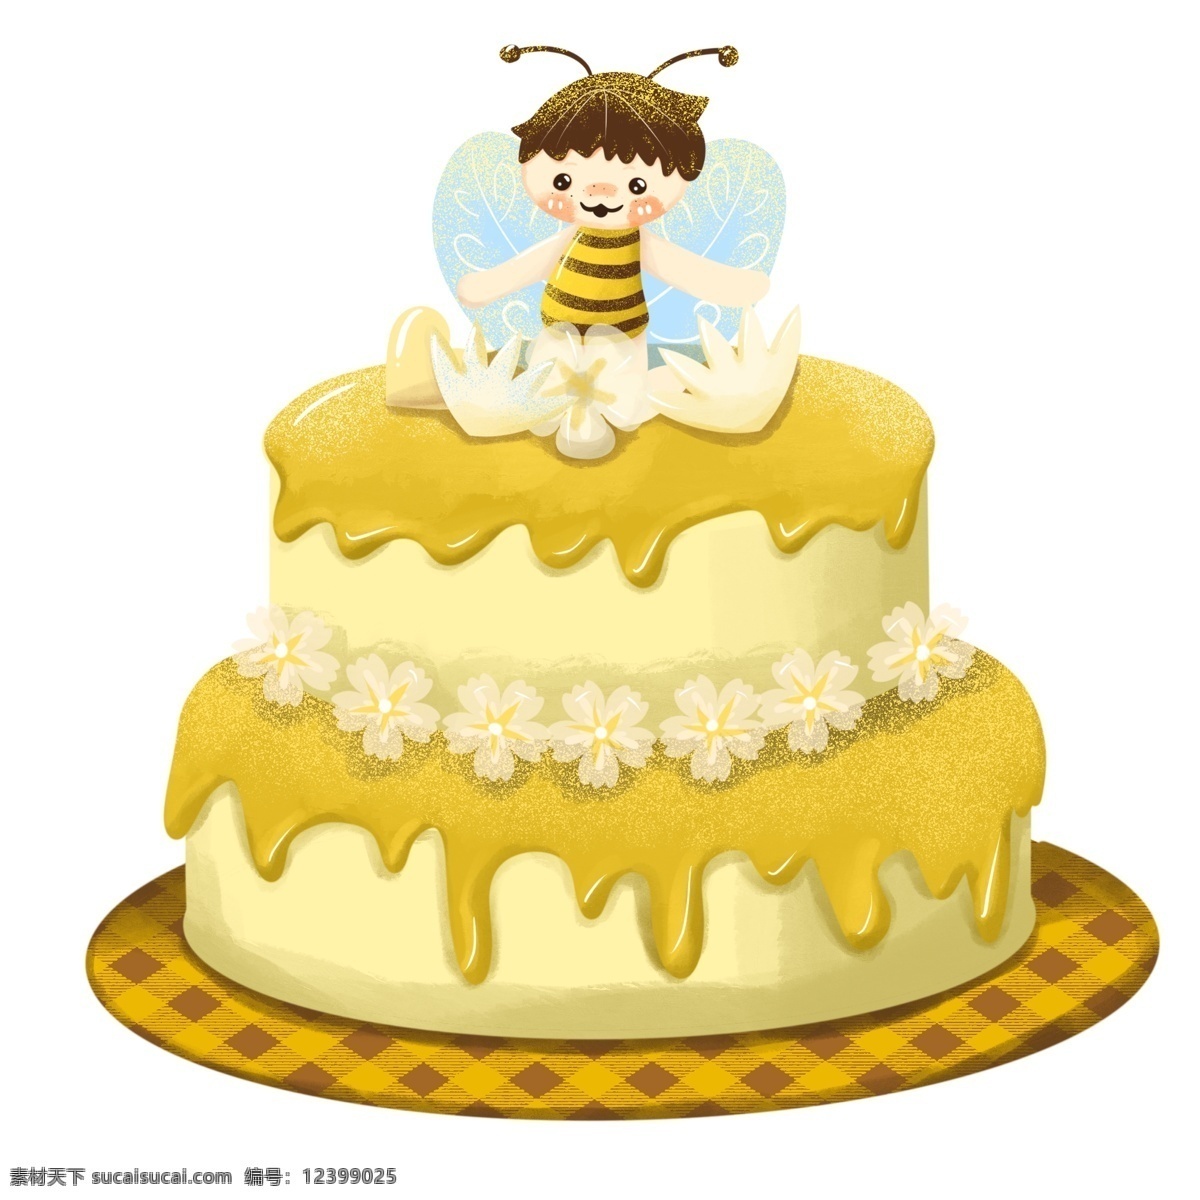 小 蜜蜂 蜂蜜 蛋糕 甜品 生日 黄色 韩 系 可爱 小蜜蜂 卡通